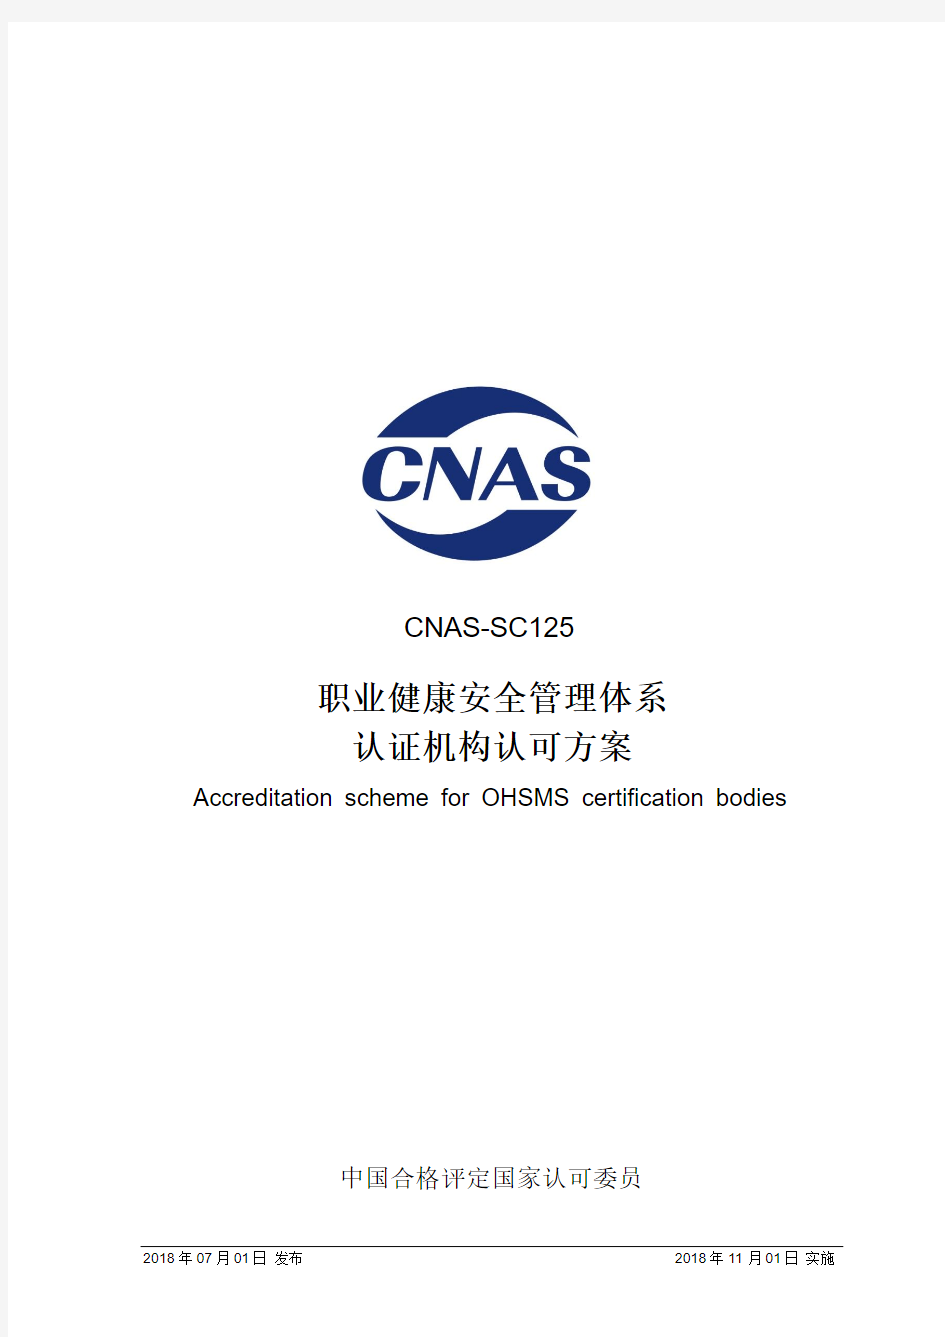 职业健康安全管理体系认证机构认可方案-CNAS